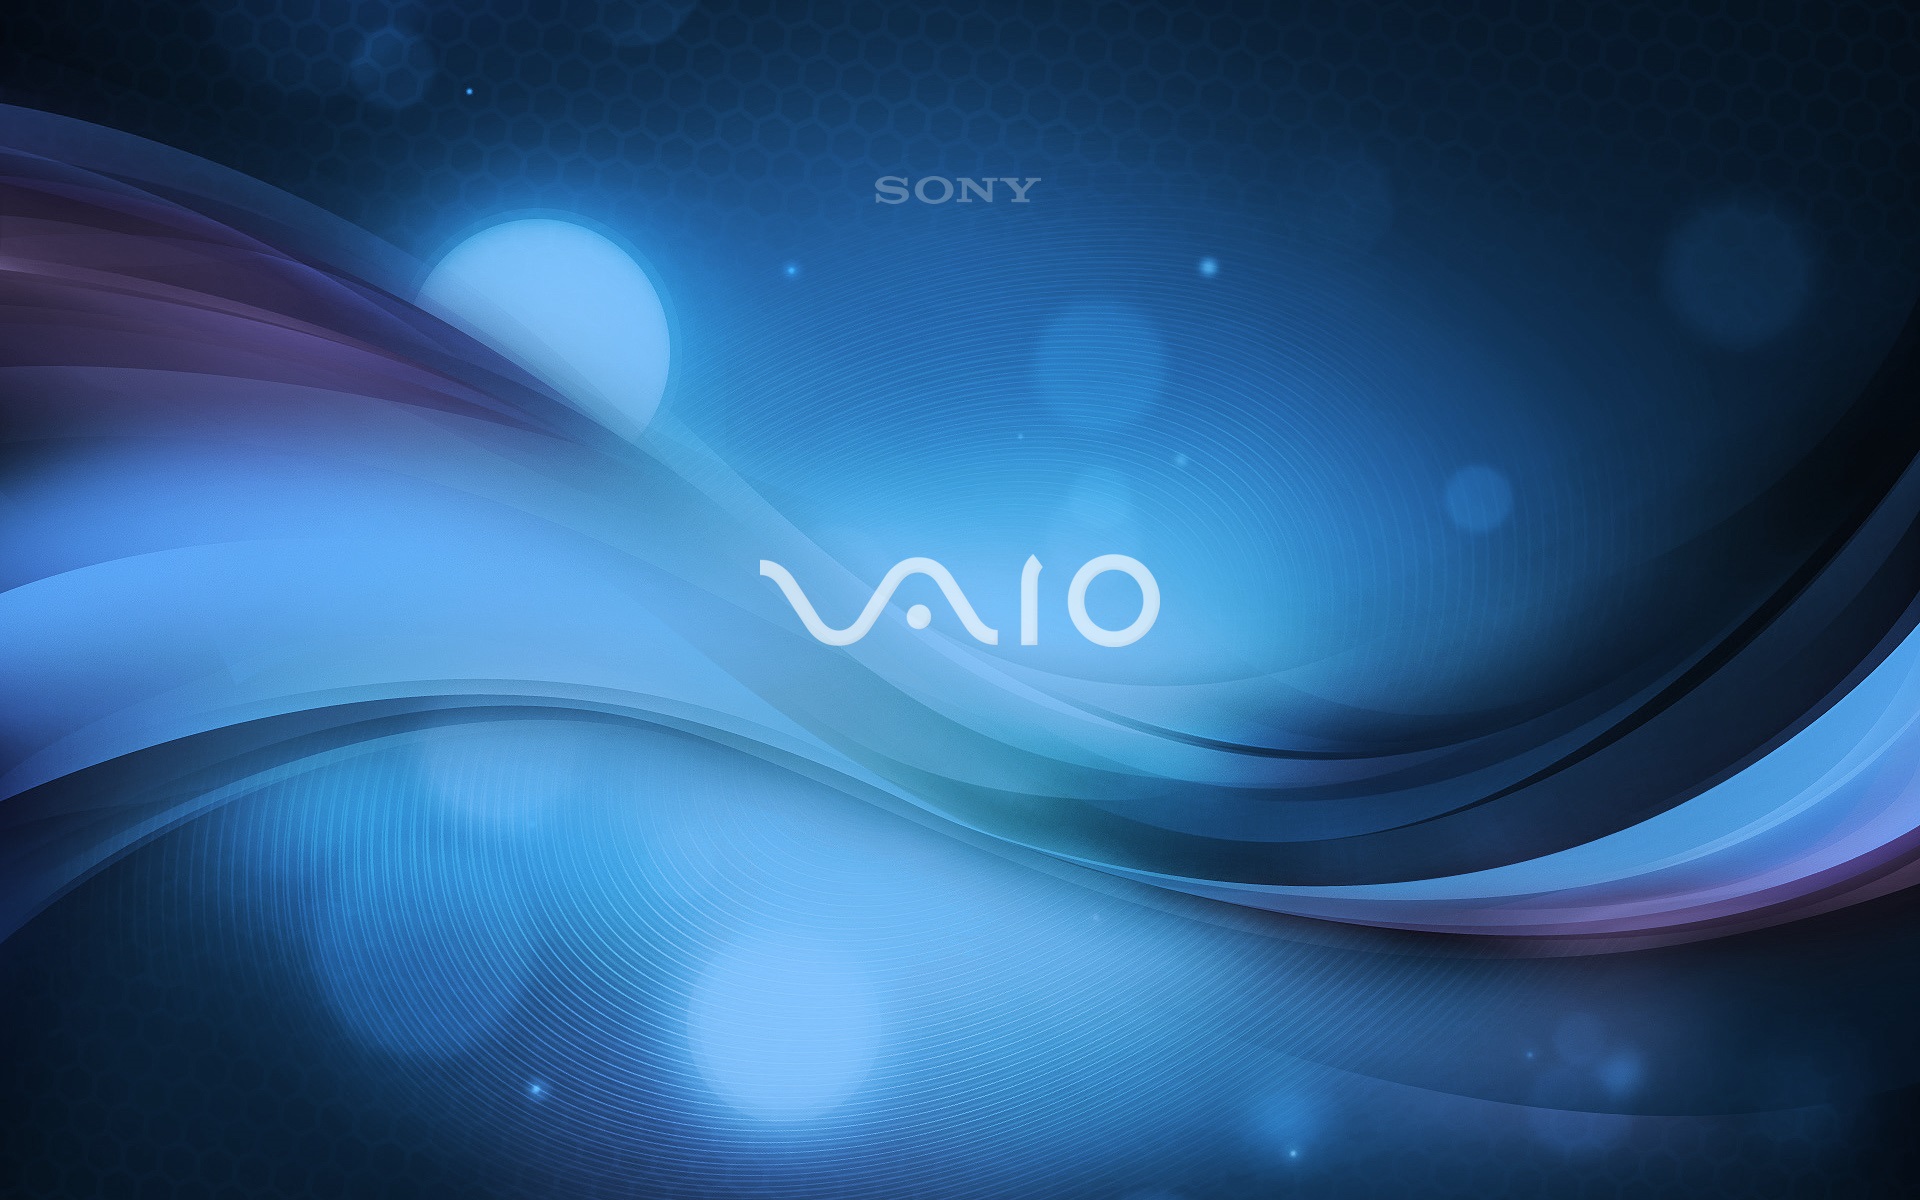 Sony Vaio Background